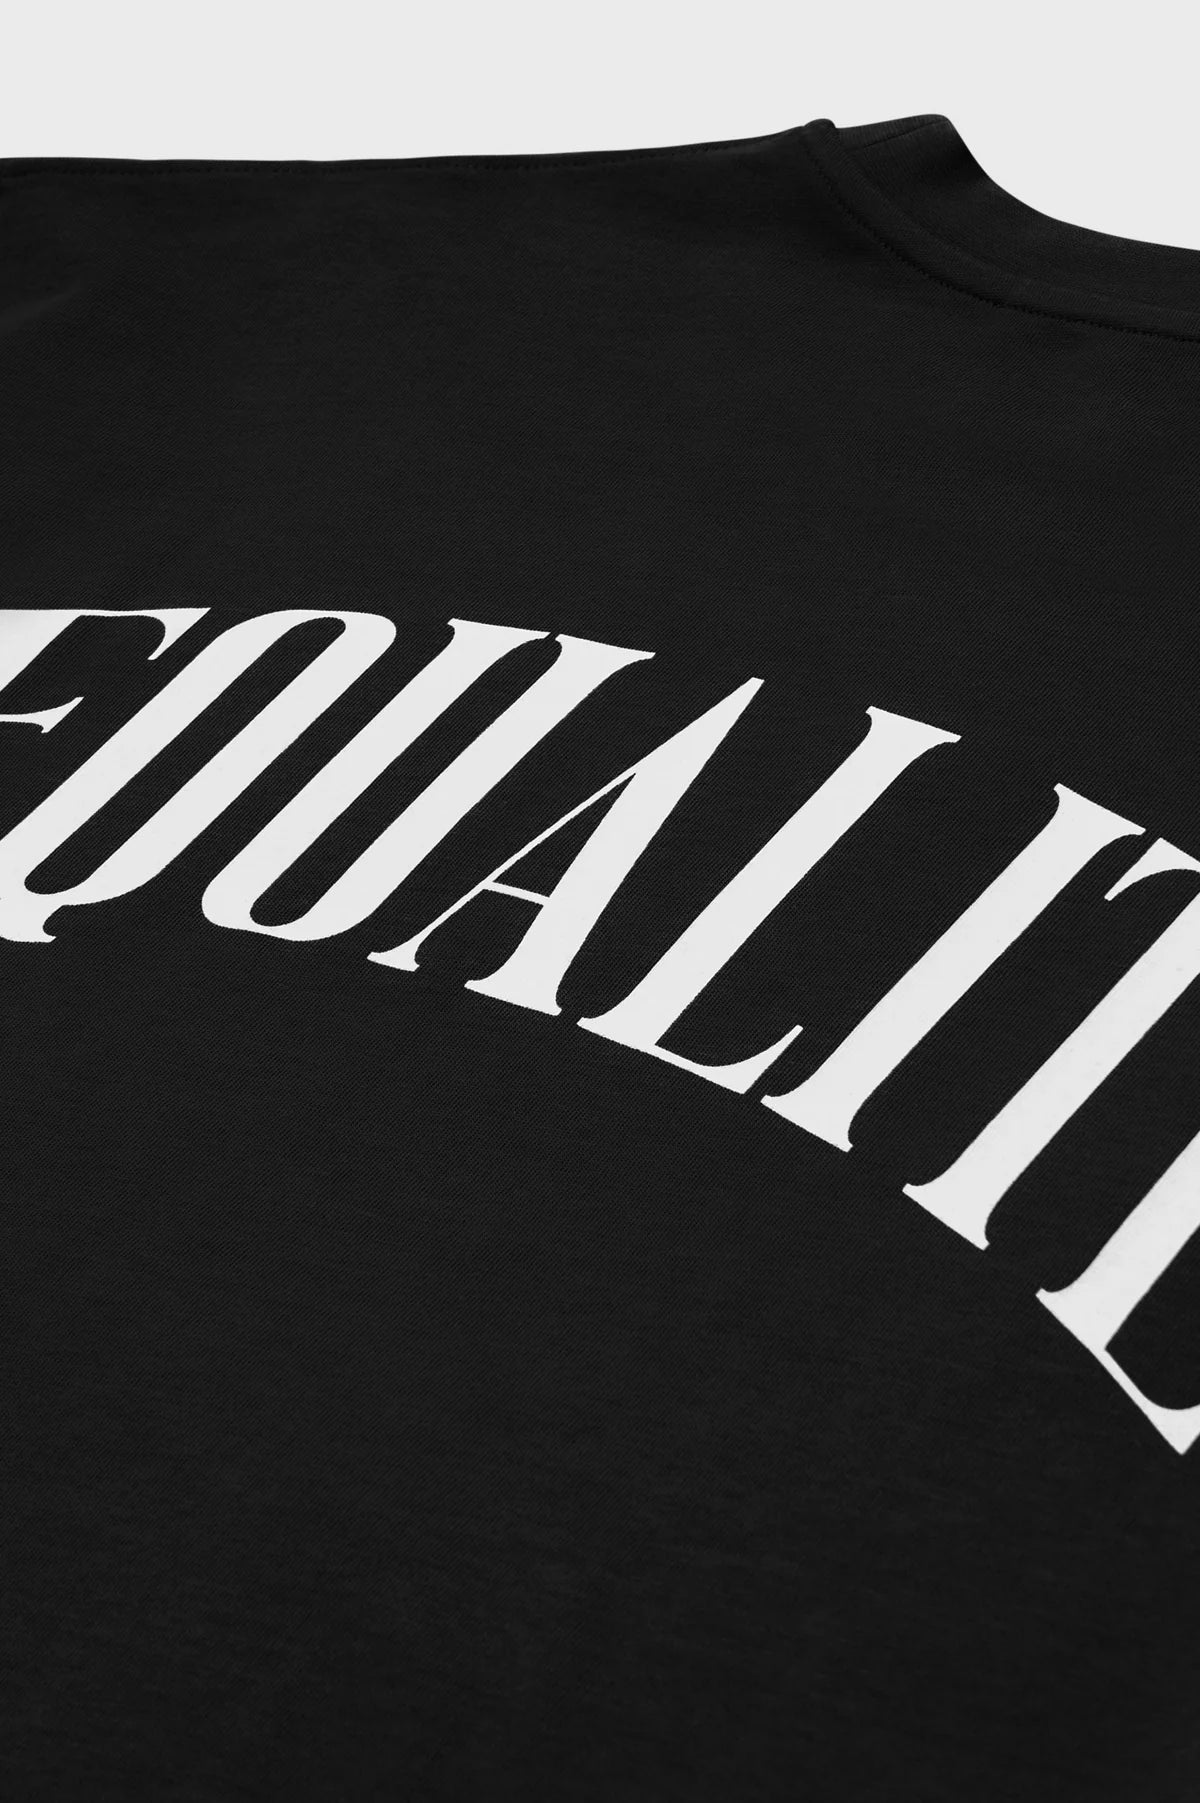 Equalité Oliver Oversized T-shirt Zwart